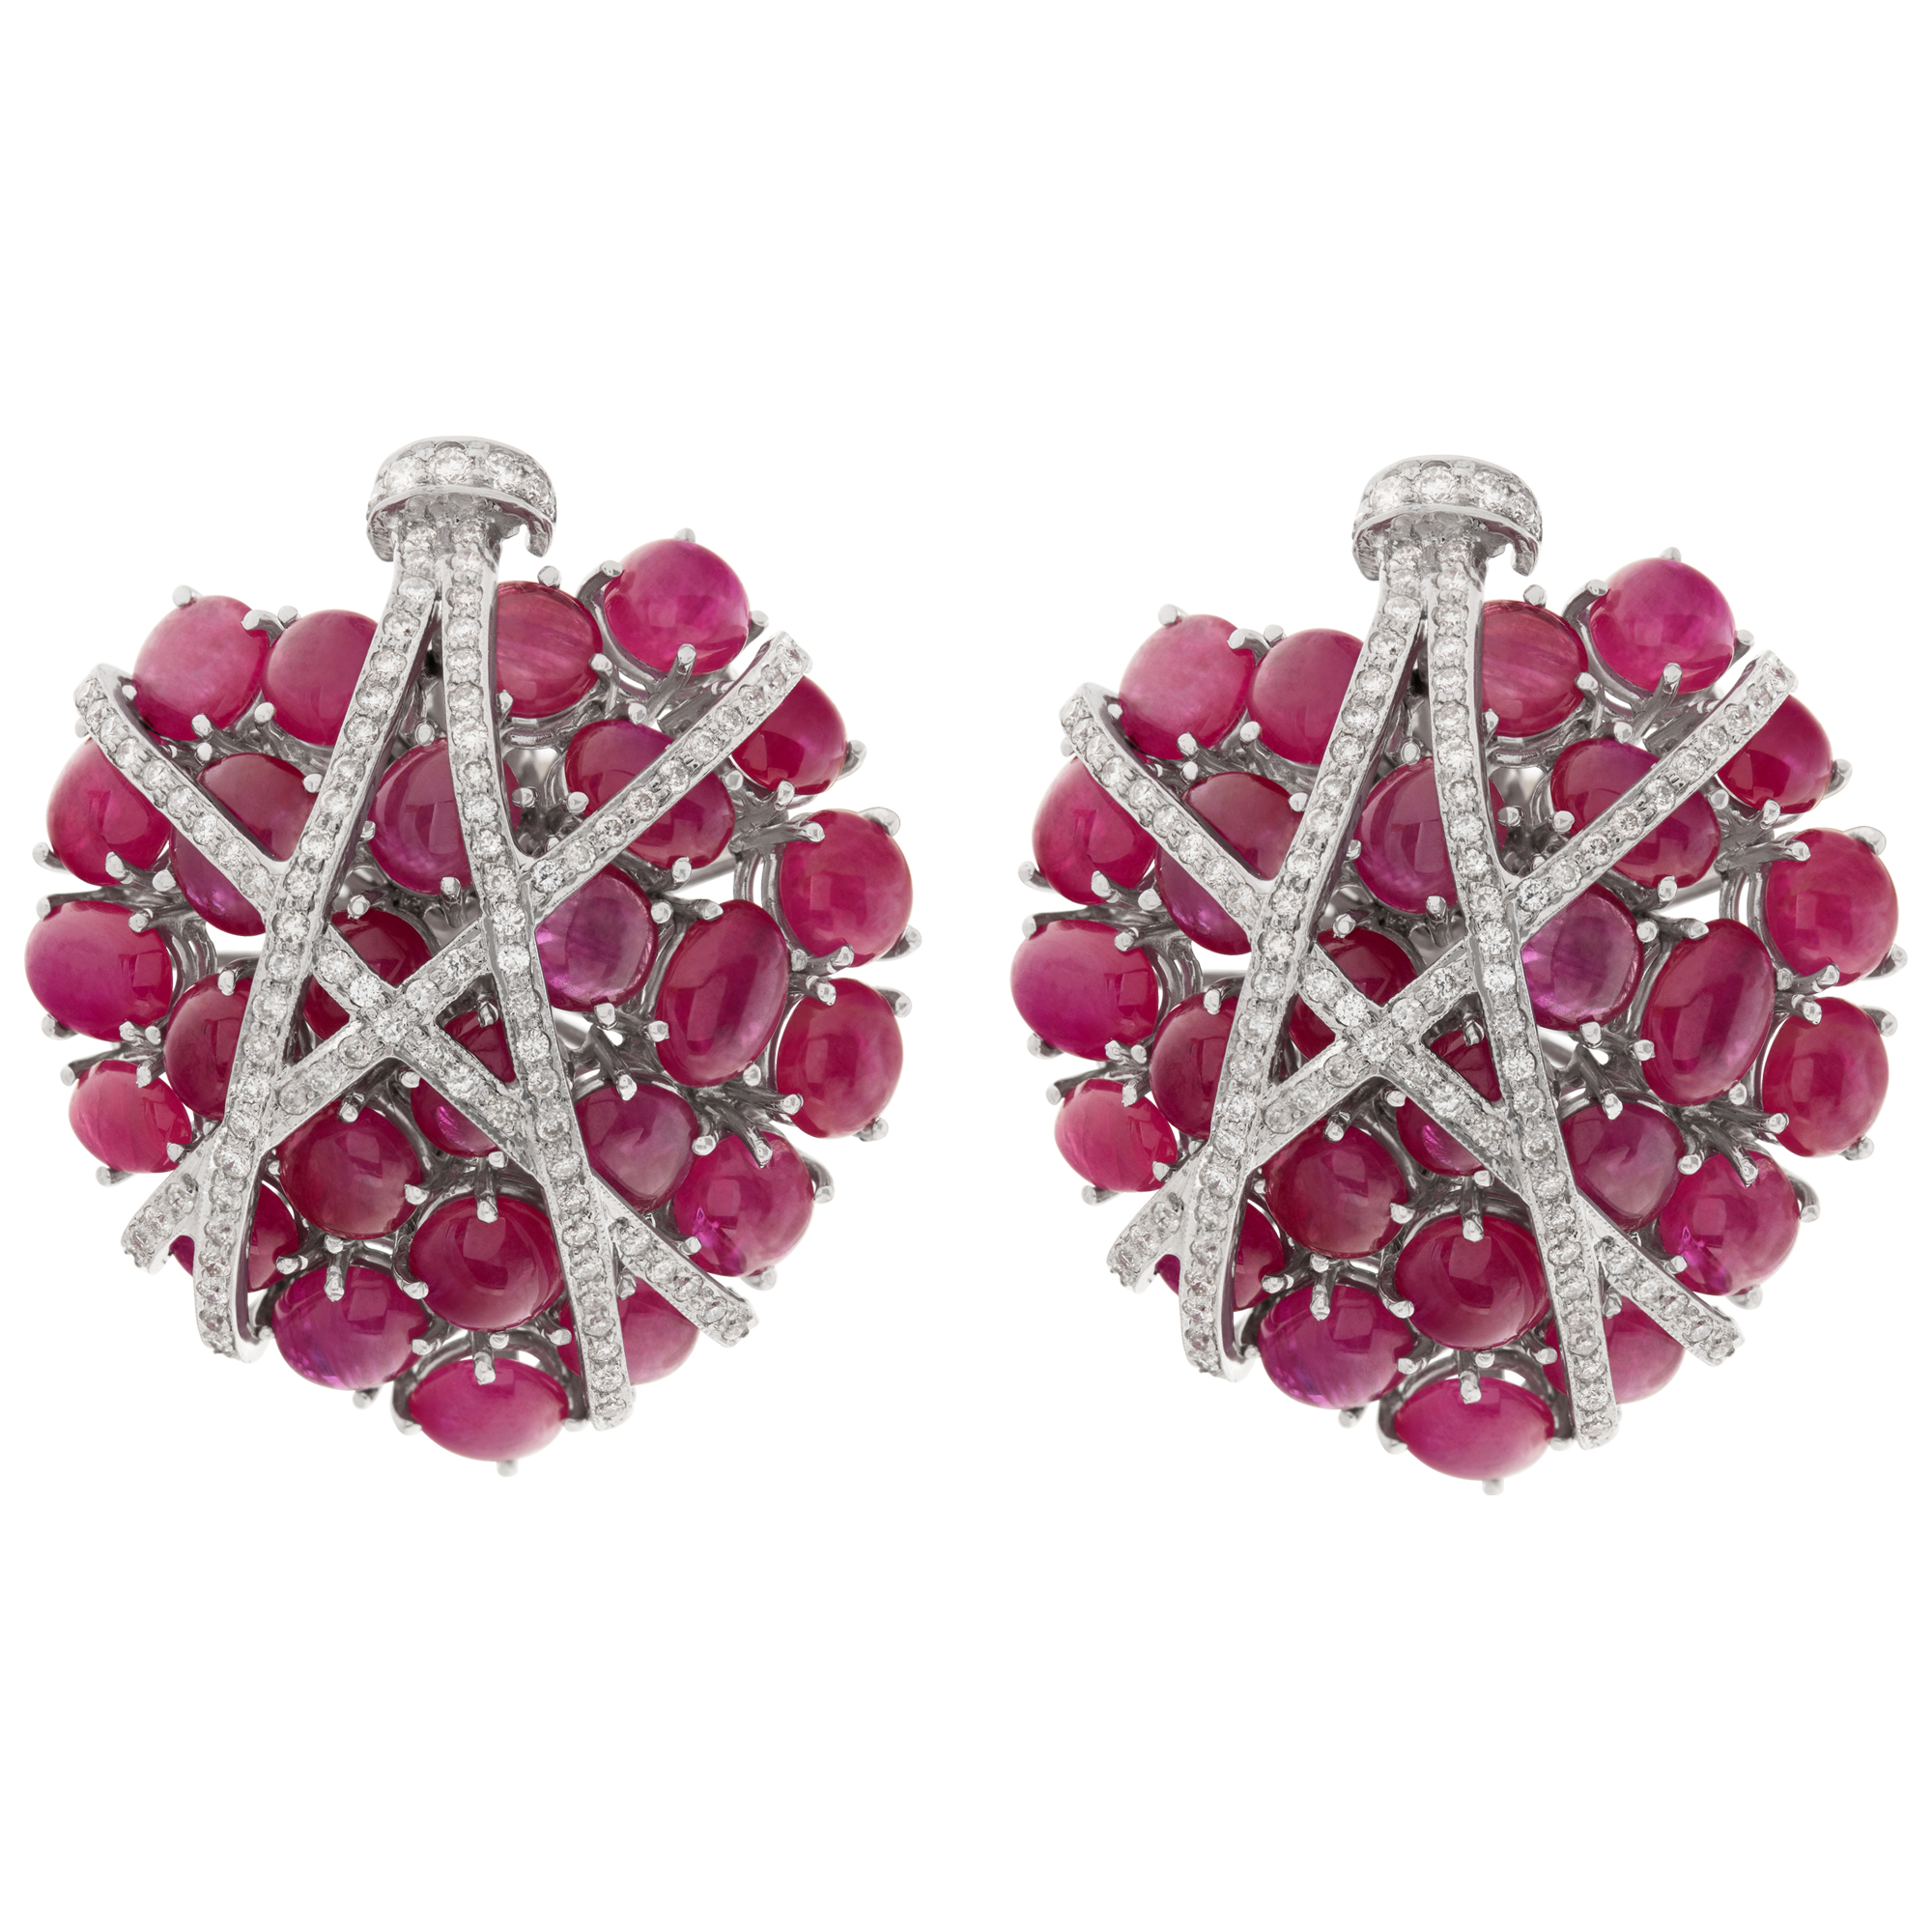 Ruby and diamond earrings in 18k (Stones)